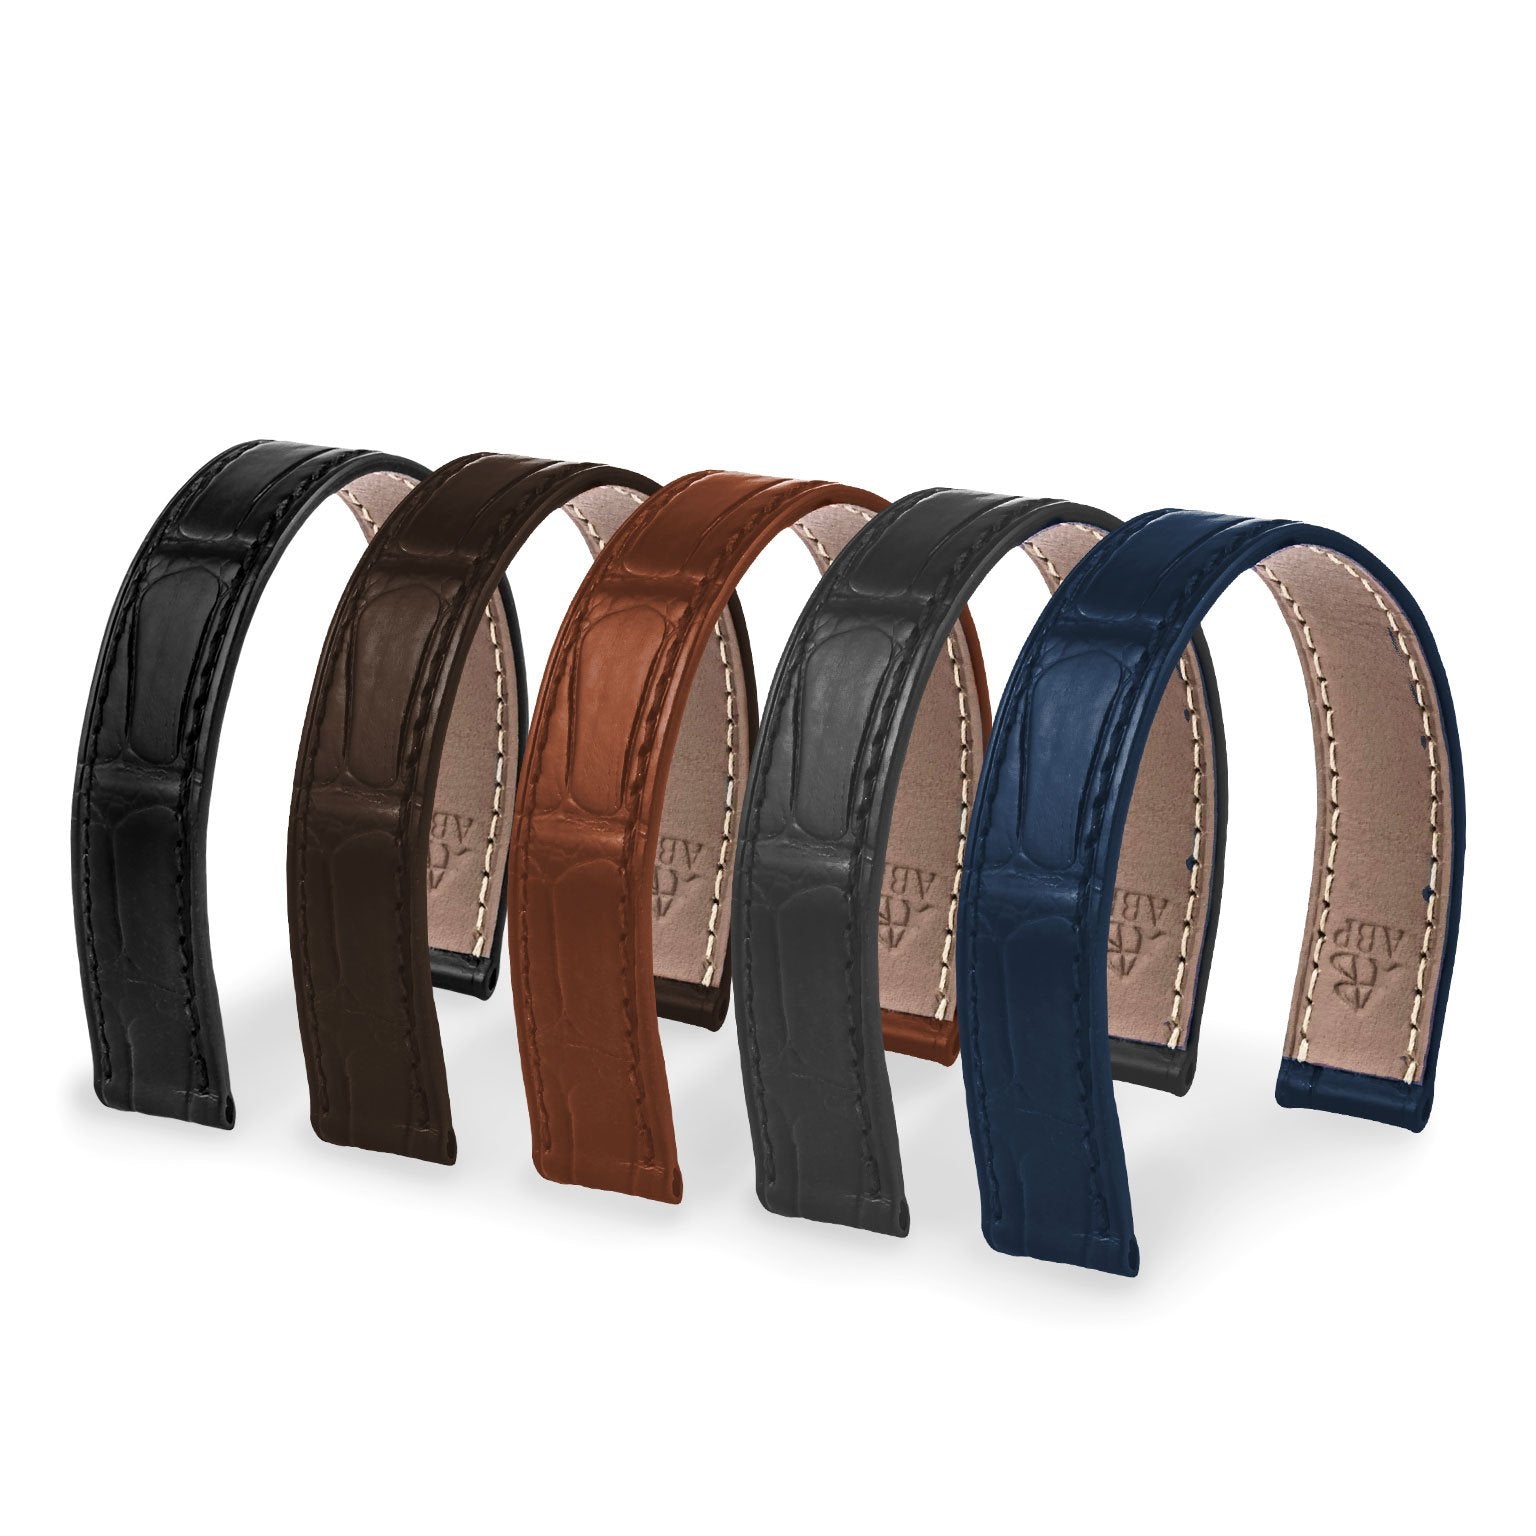 Bracelet-montre cuir - Poiray - Alligator (noir, marron, gris, bleu) - watch band leather strap - ABP Concept -